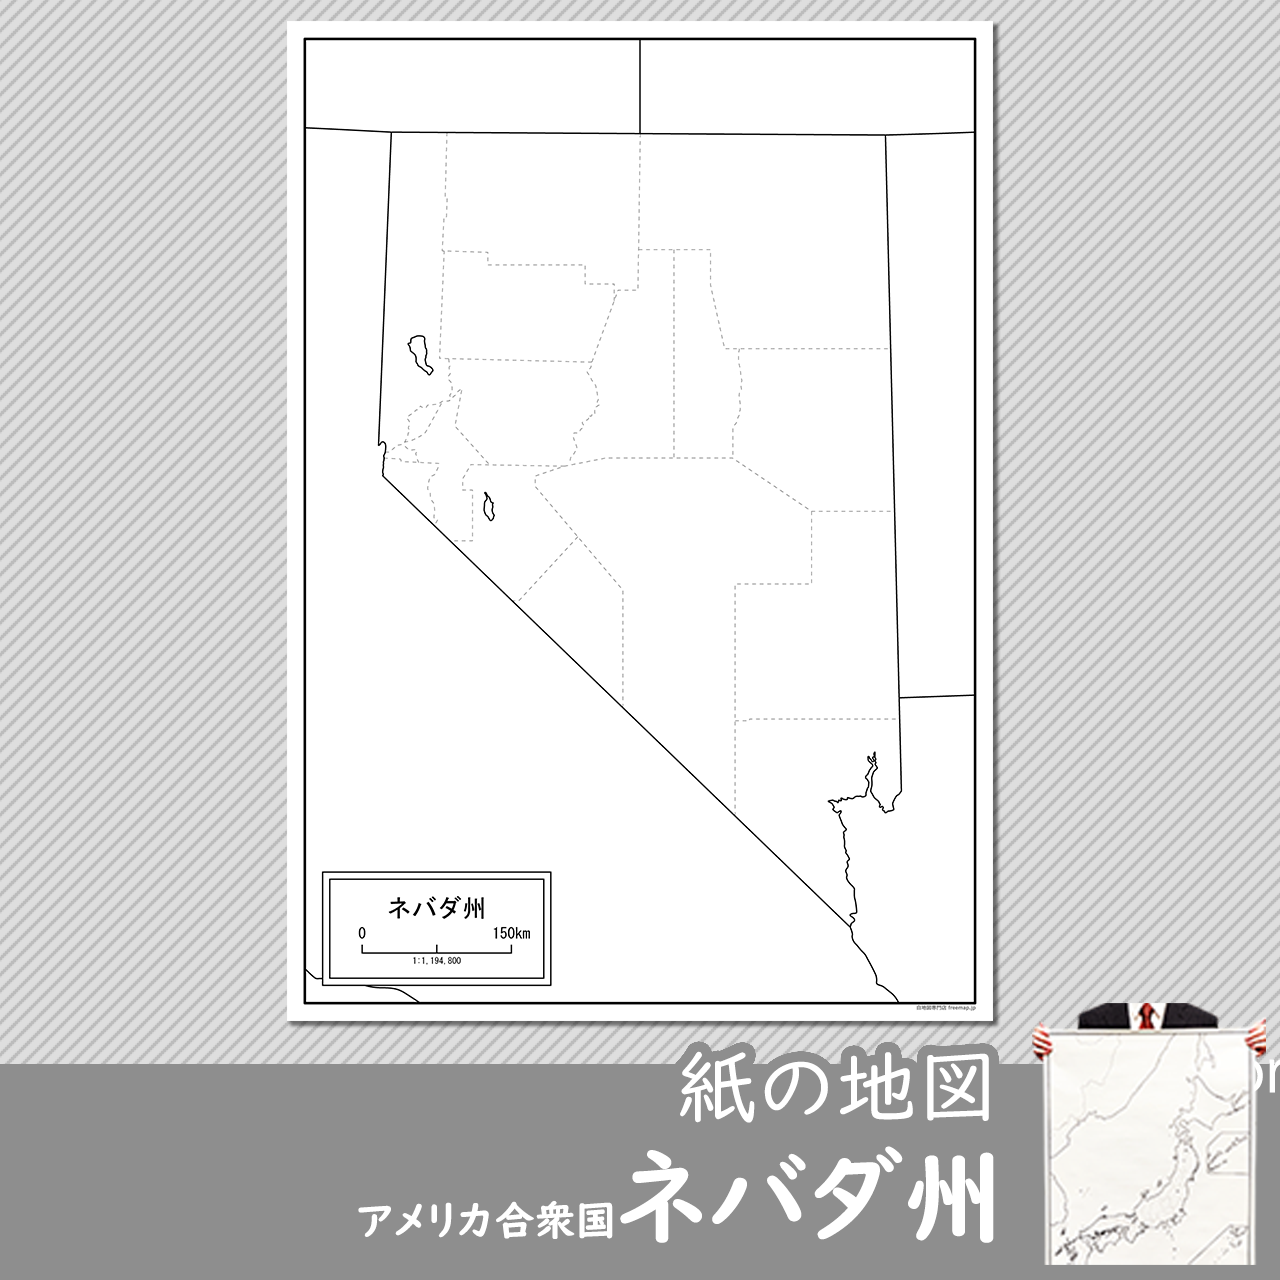 ネバダ州の紙の白地図のサムネイル